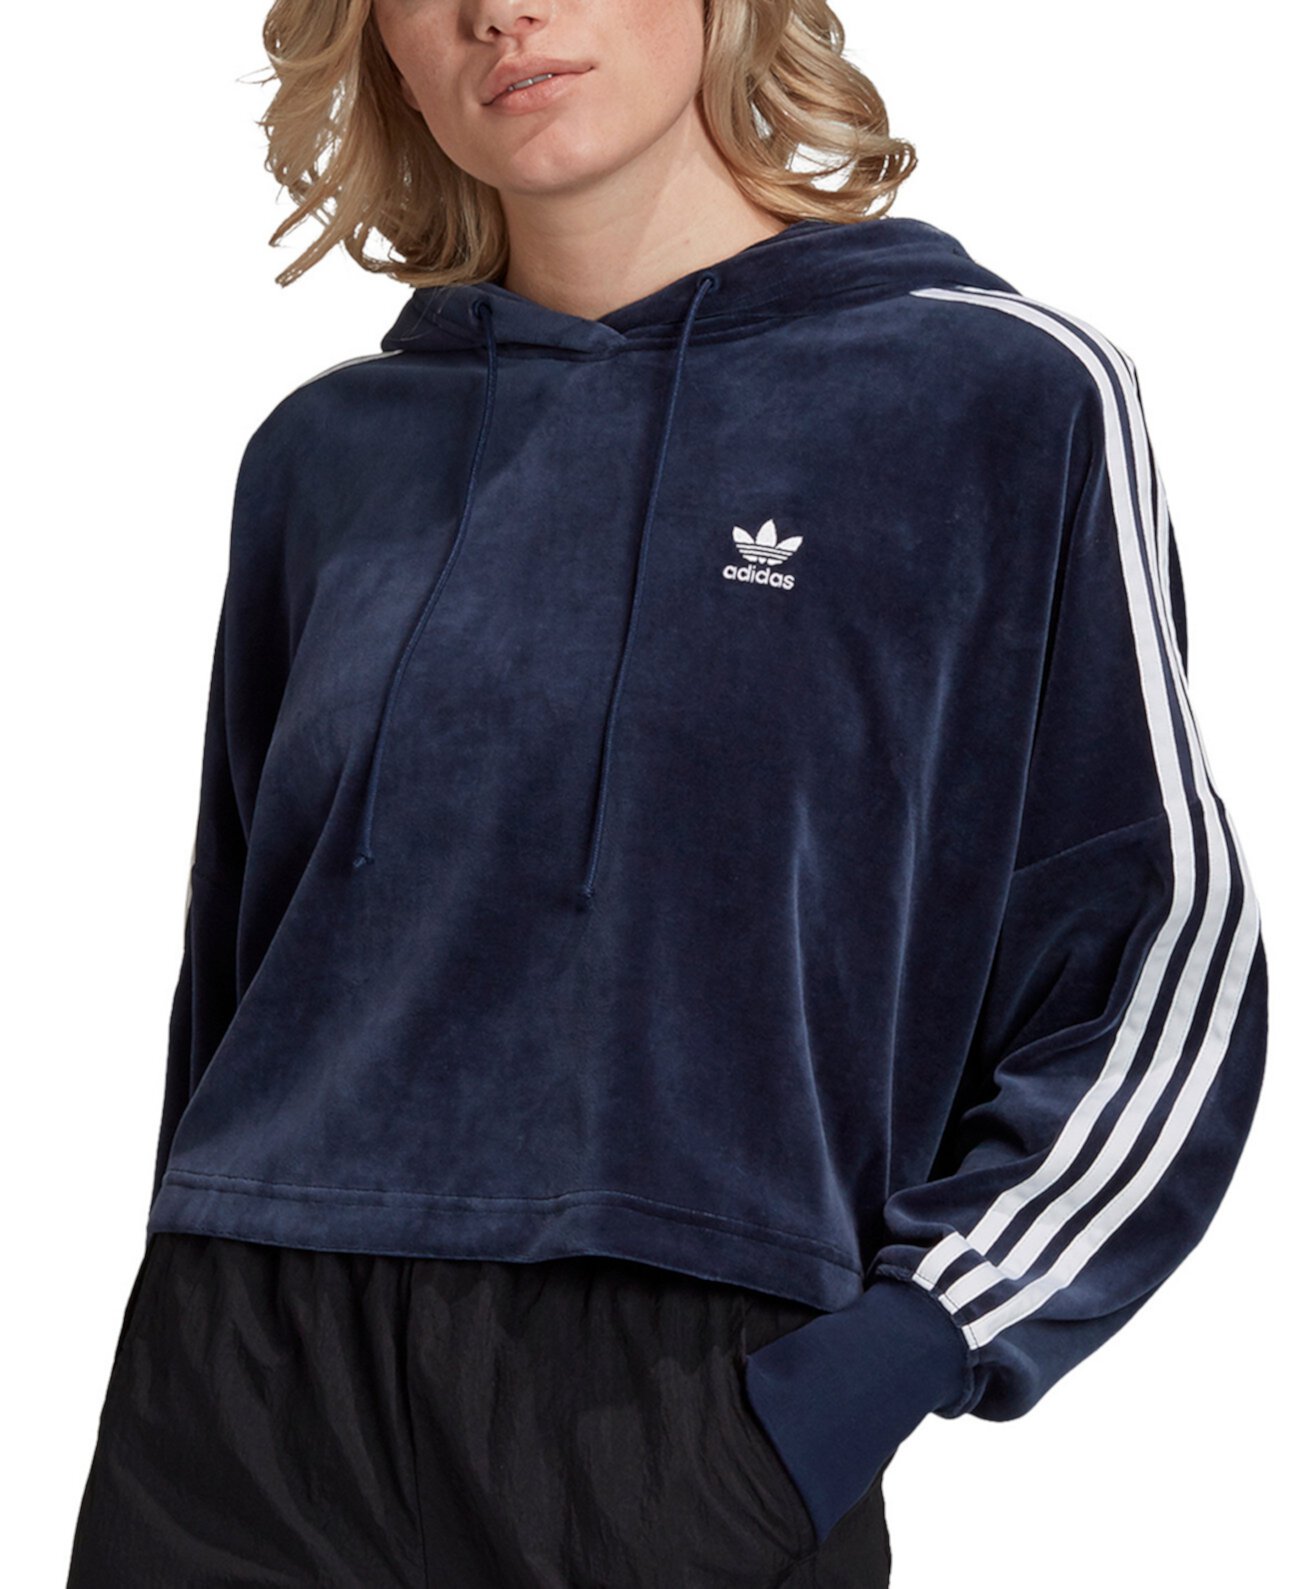 Женская велюровая укороченная худи Adicolor с капюшоном Adidas